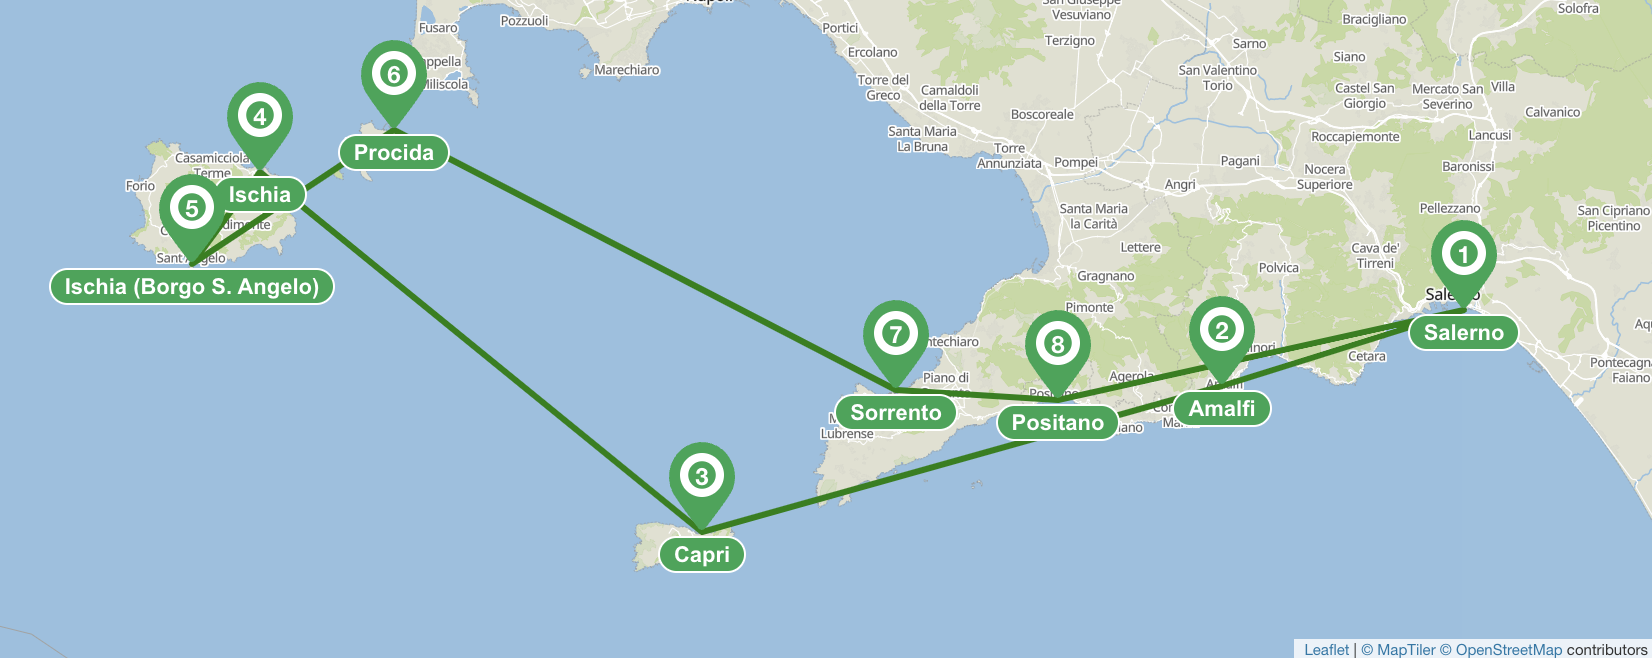 Itinéraire de navigation de 7 jours sur la côte amalfitaine